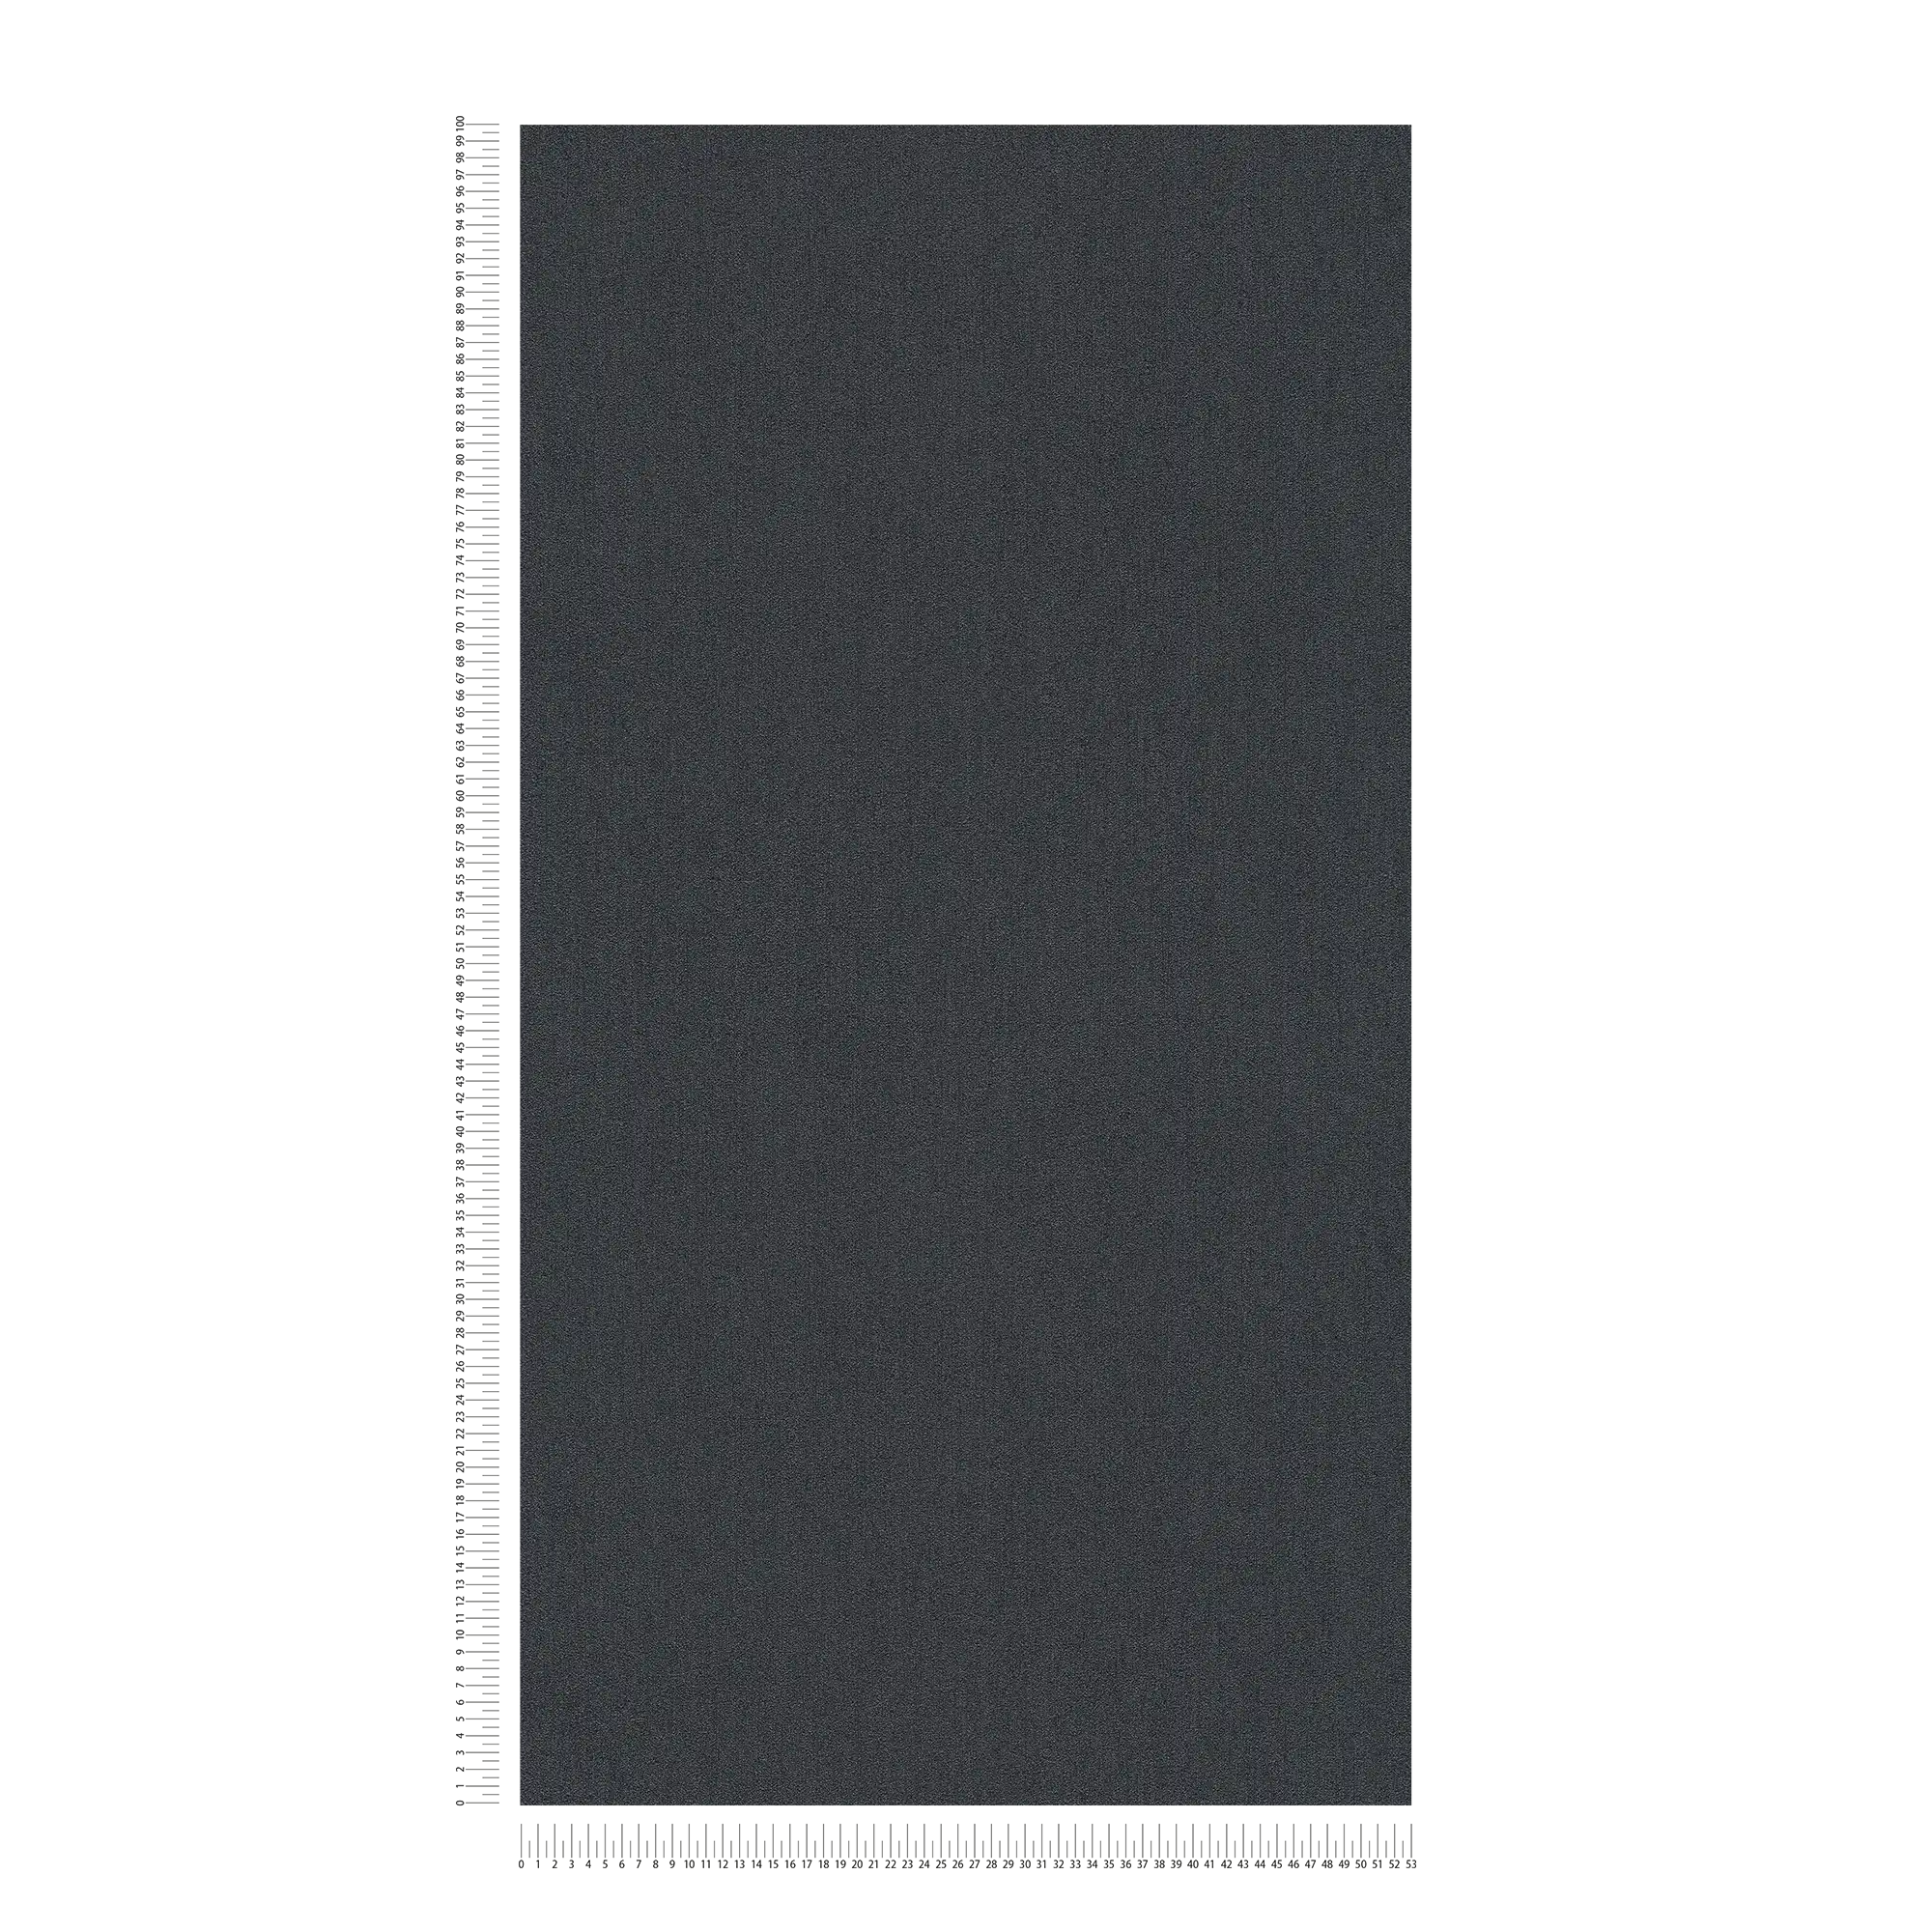             Papel pintado no tejido Karl LAGERFELD liso y con textura - negro
        